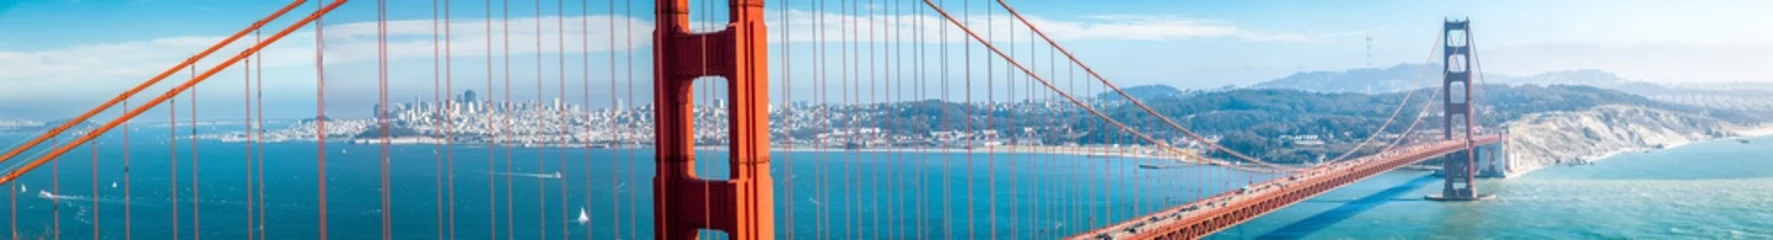 Rolgordijnen Golden Gate Bridge-panorama met de horizon van San Francisco in de zomer, Californië, de V.S © JFL Photography